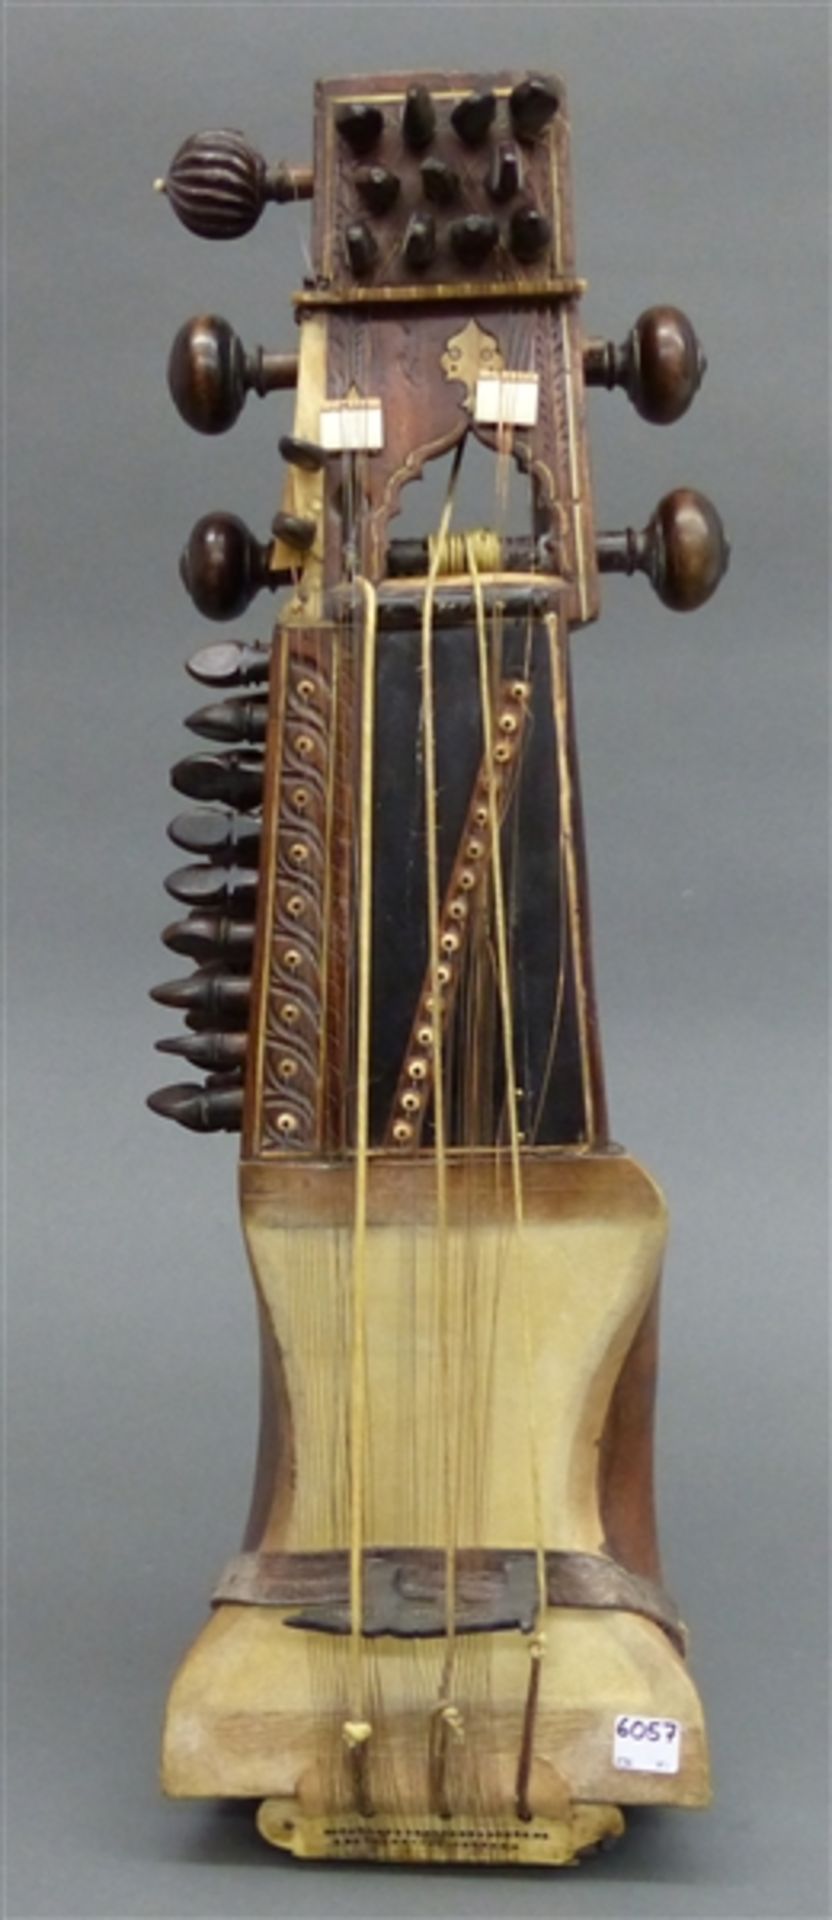 Streichinstrument (Sarangi) um 1900, Indien/Pakistan, Holz, teilweise beschnitzt,